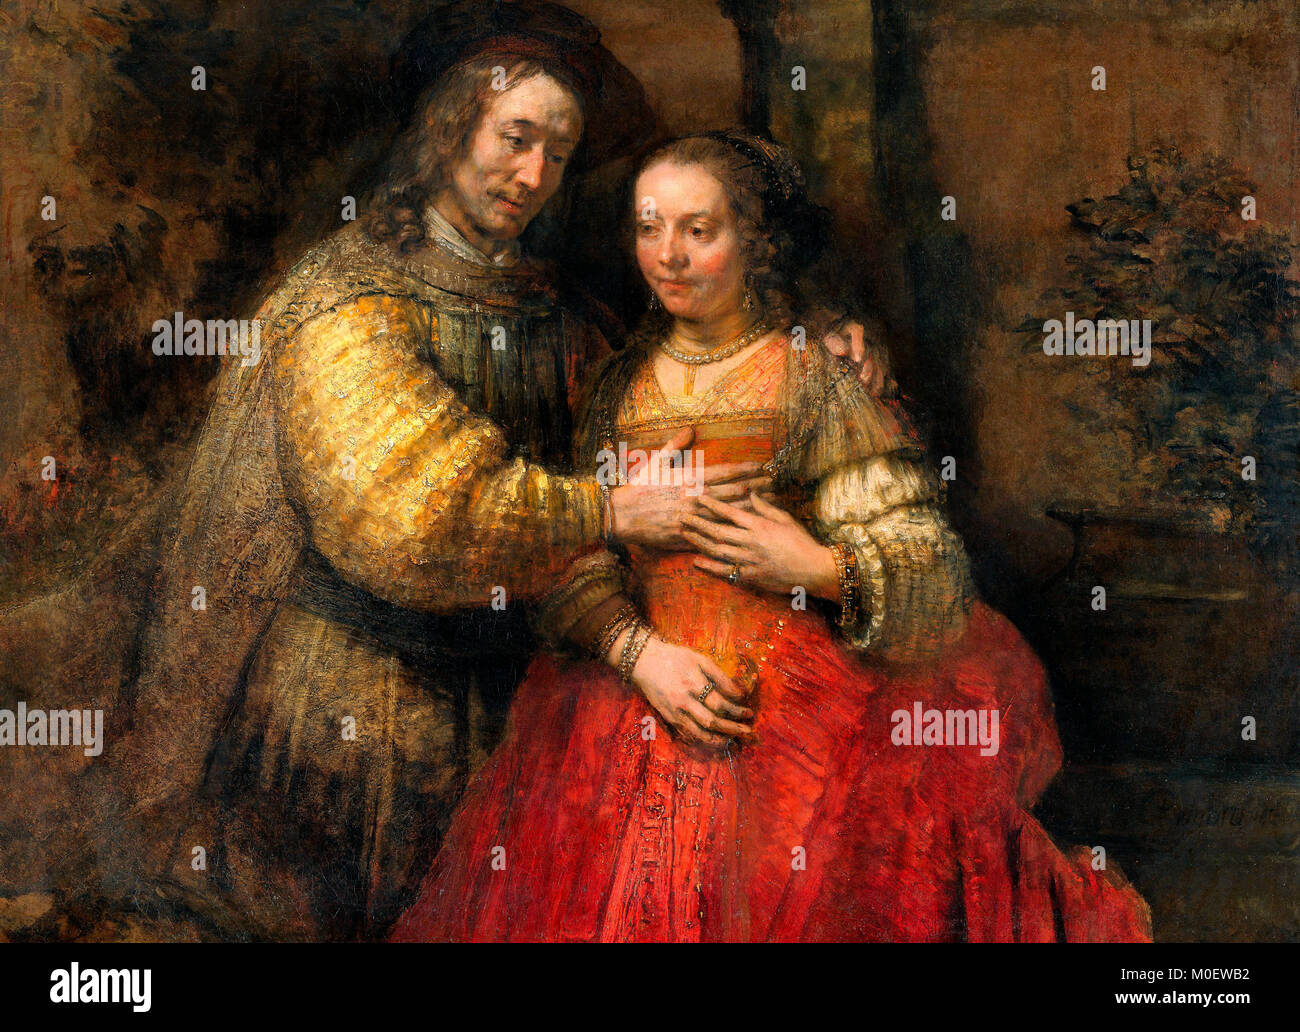 Die jüdische Braut - Portrait von ein paar als Figuren aus dem Alten Testament - Rembrandt van Rijn Stockfoto